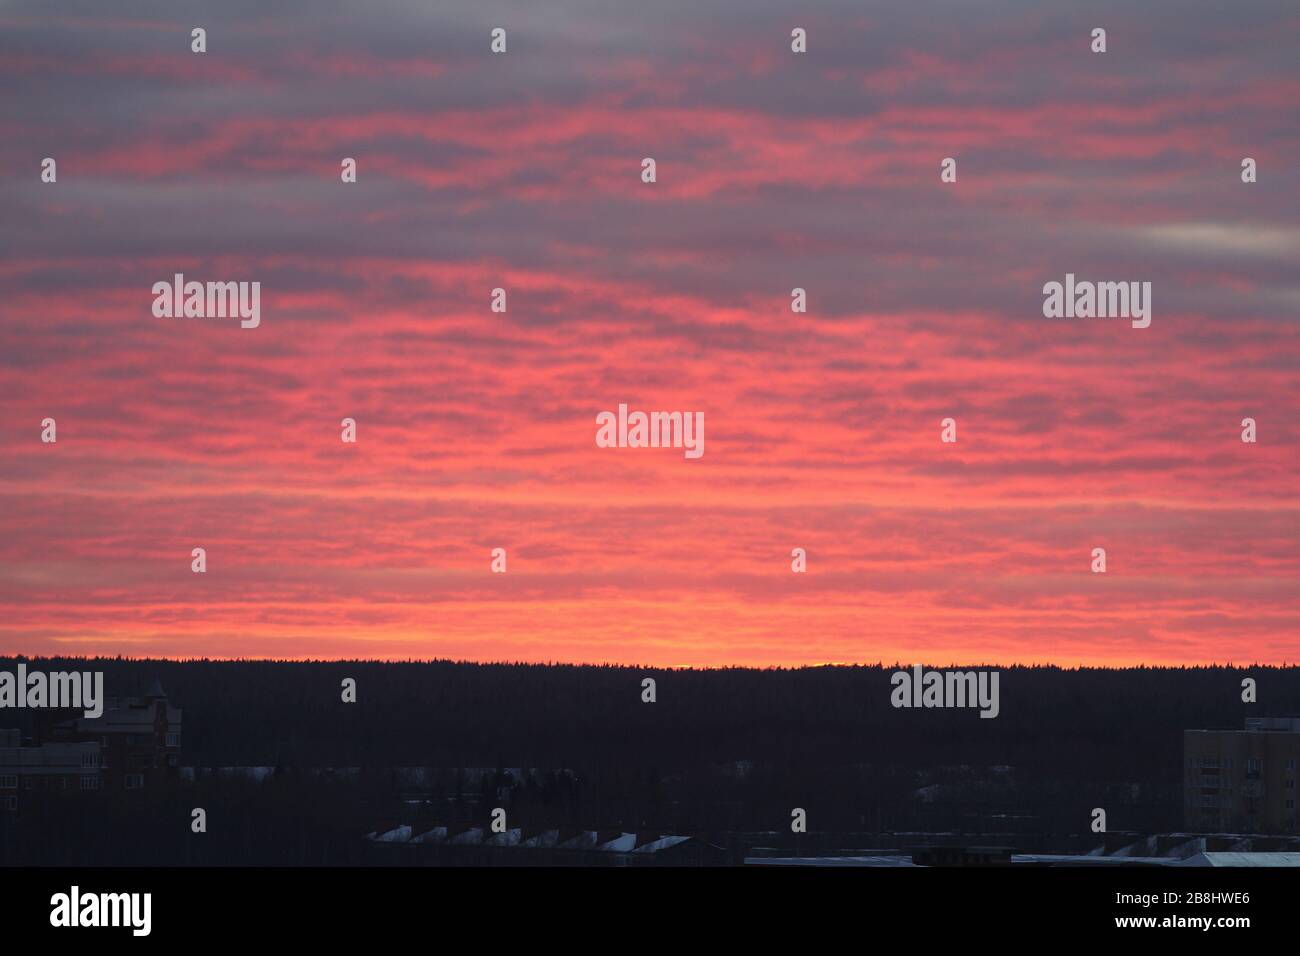 Greller scharlachroter Sonnenuntergang oder Sonnenaufgang über dem Horizont. Rosafarbene Wolken, die von der Sonne über dem Horizont beleuchtet werden. Stockfoto